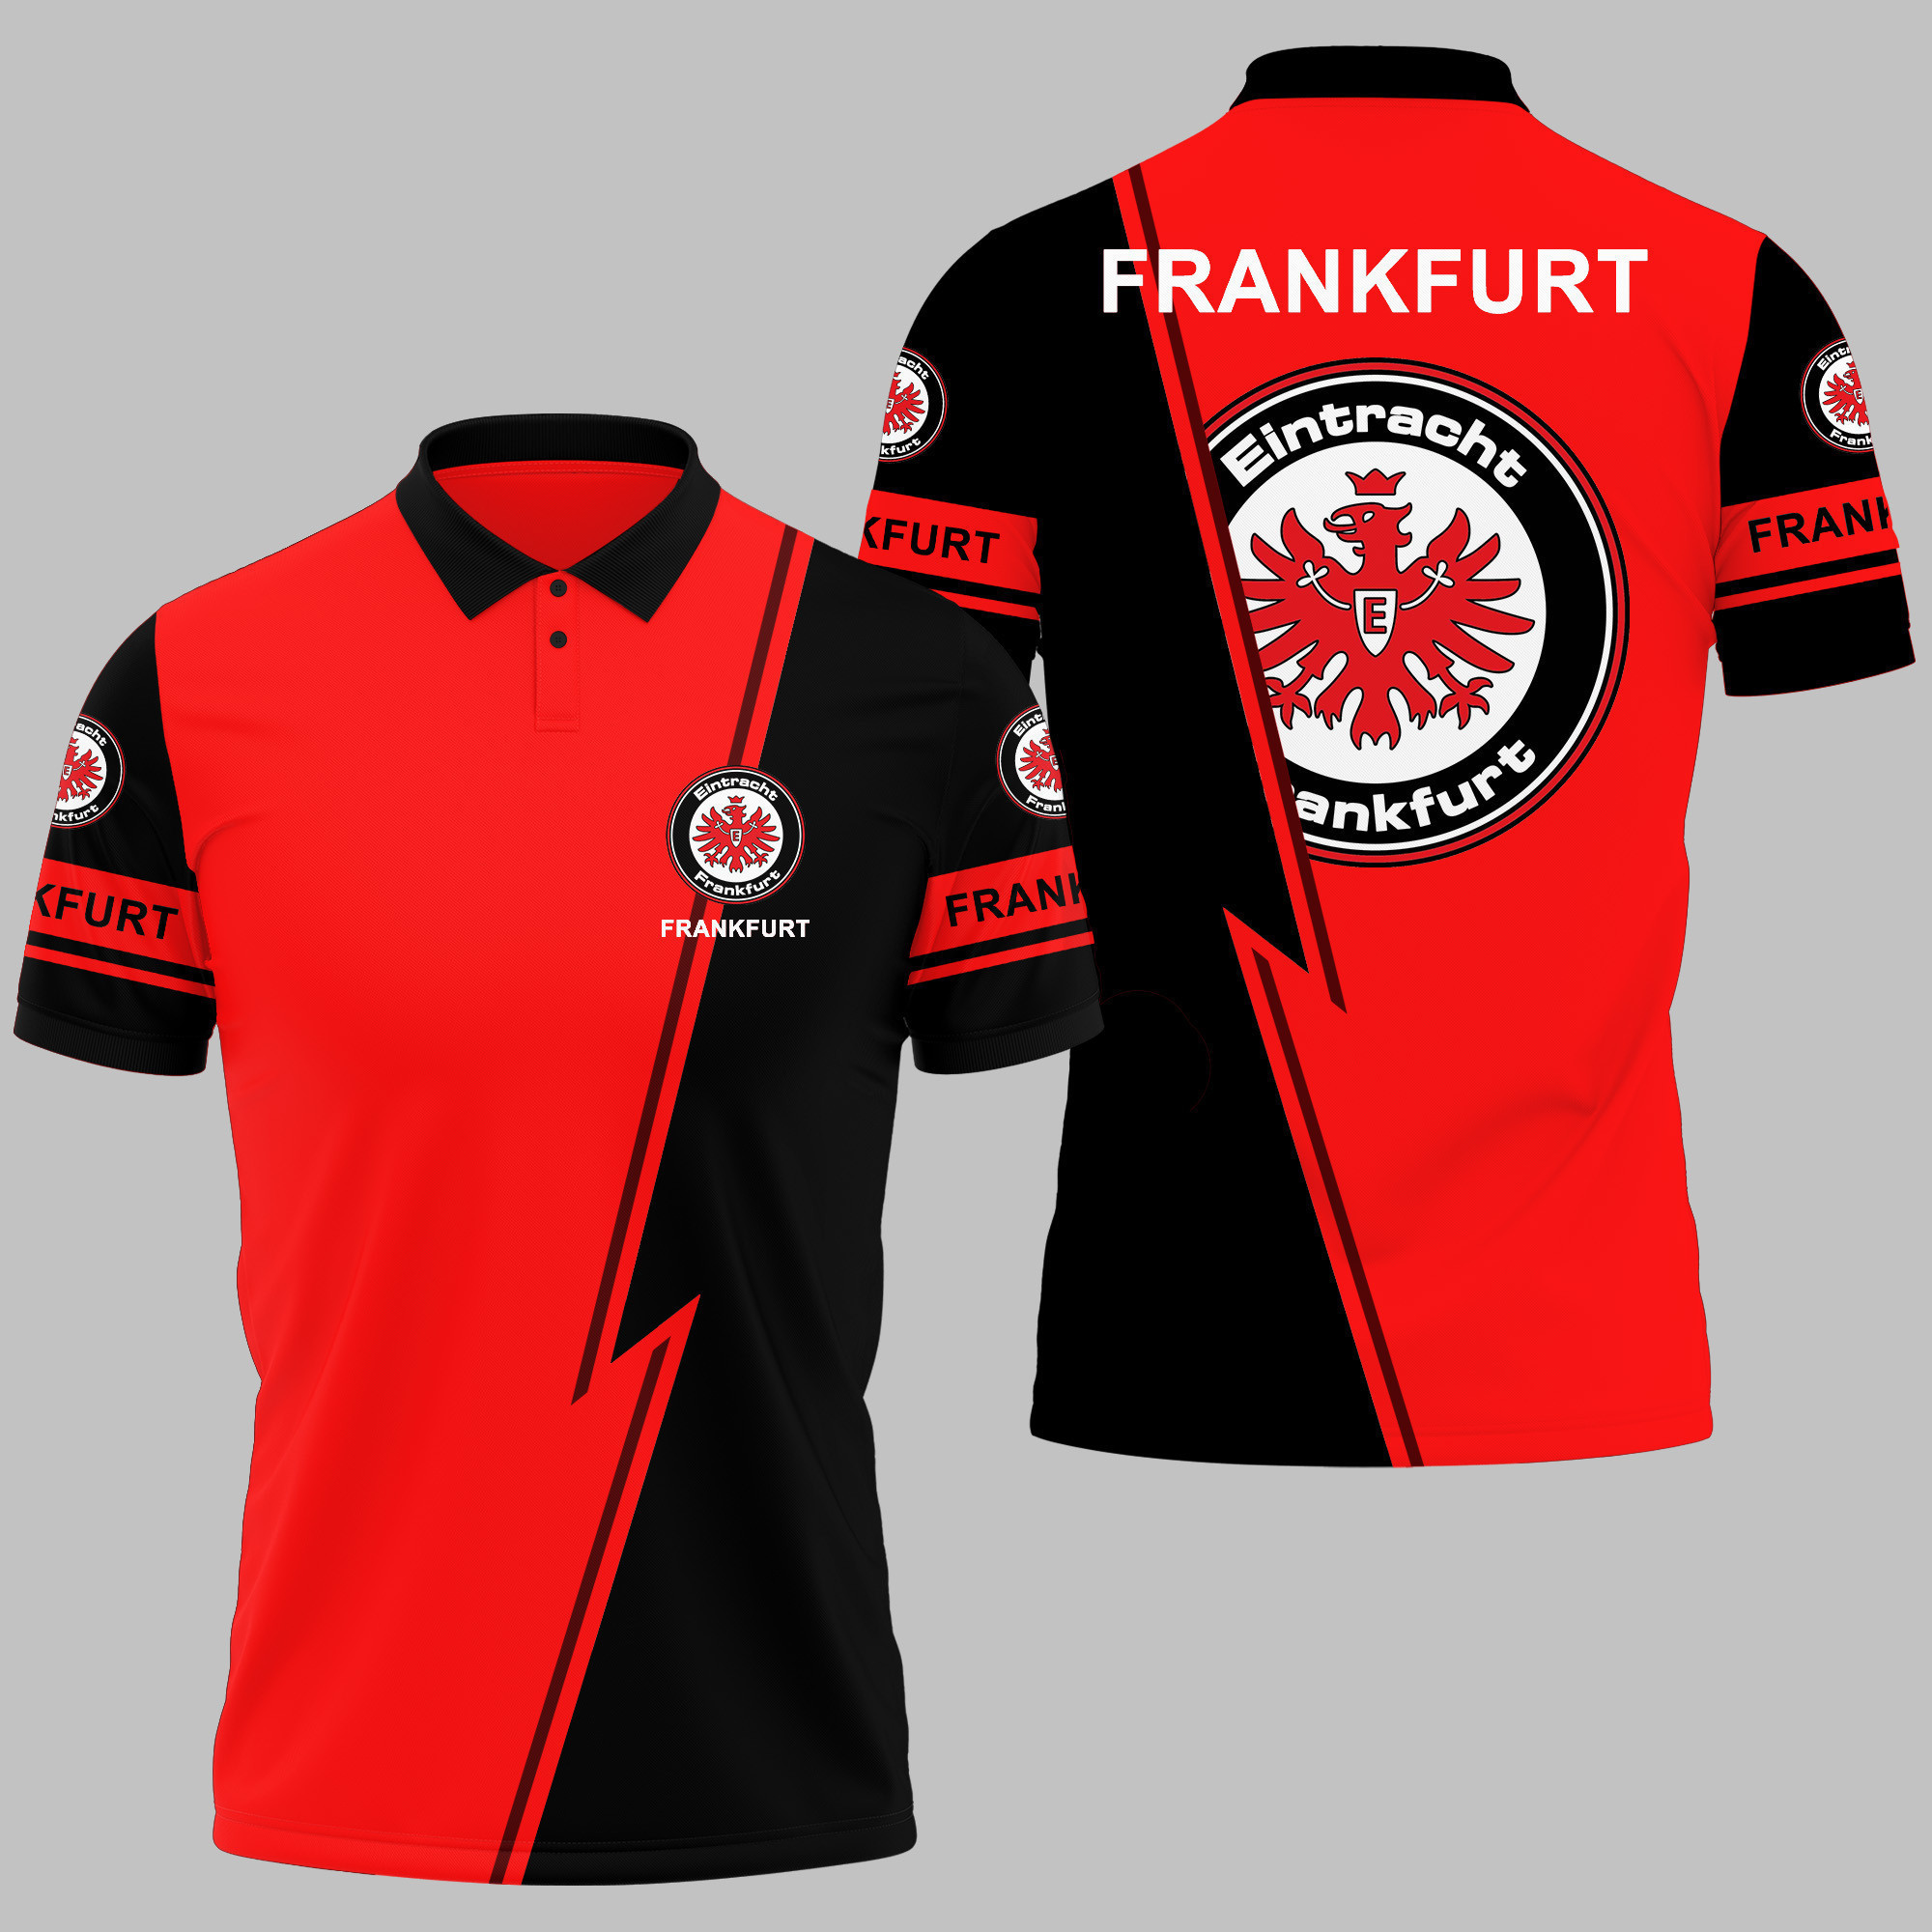 Eintracht Frankfurt Polo Shirt Ver 3